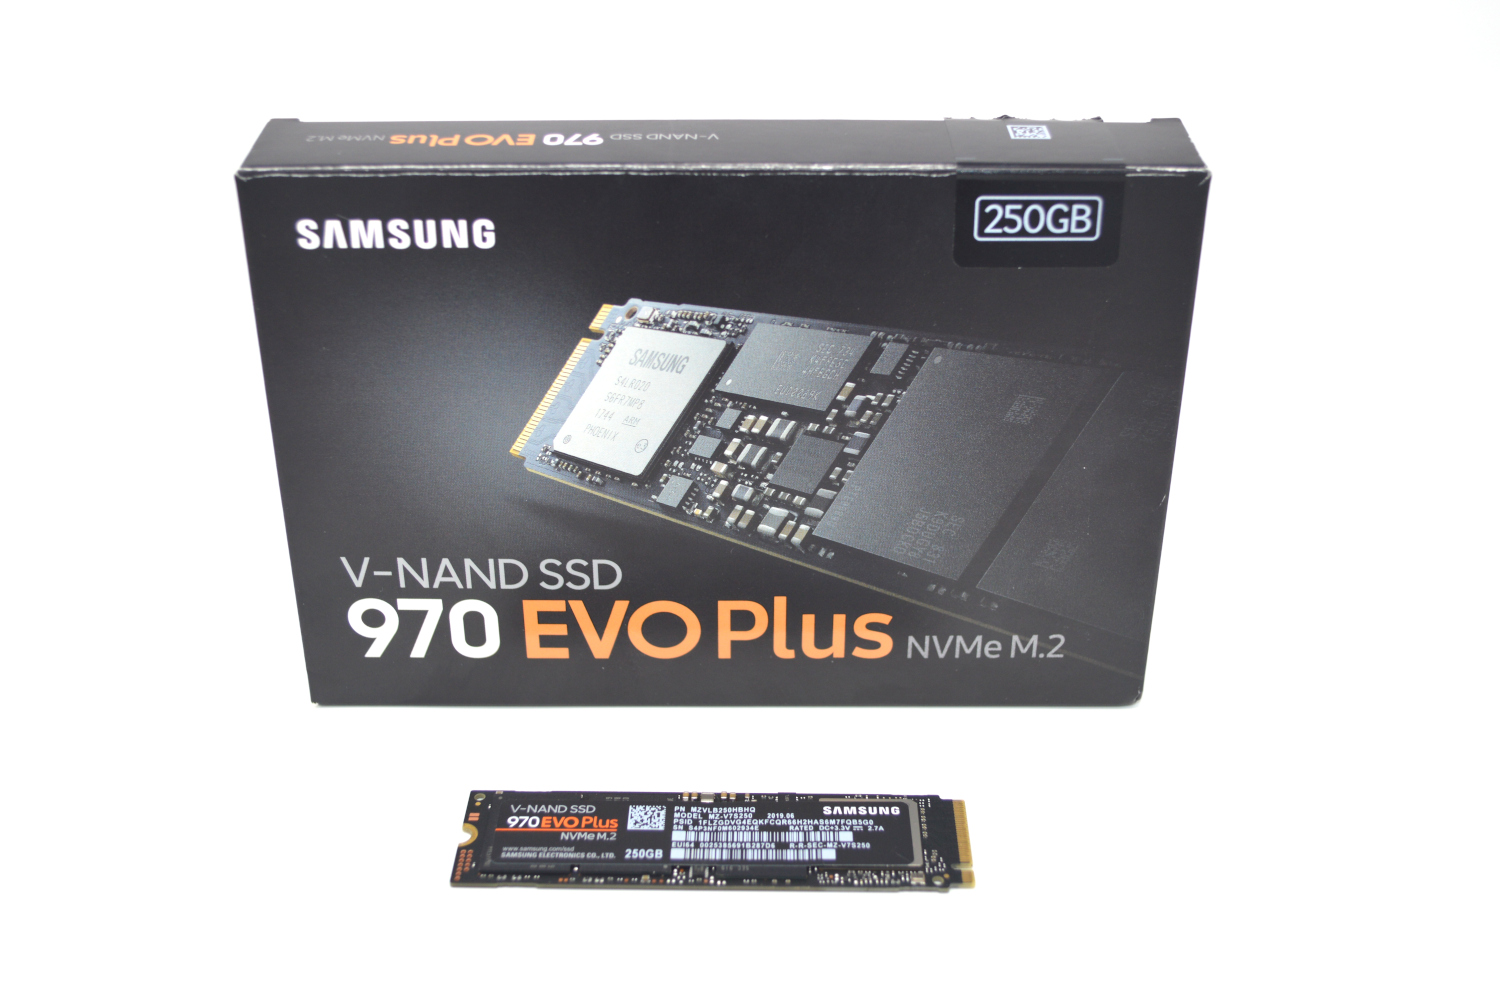 som resultat råd afstemning Samsung 970 EVO Plus 250GB NVMe SSD Review - ServeTheHome